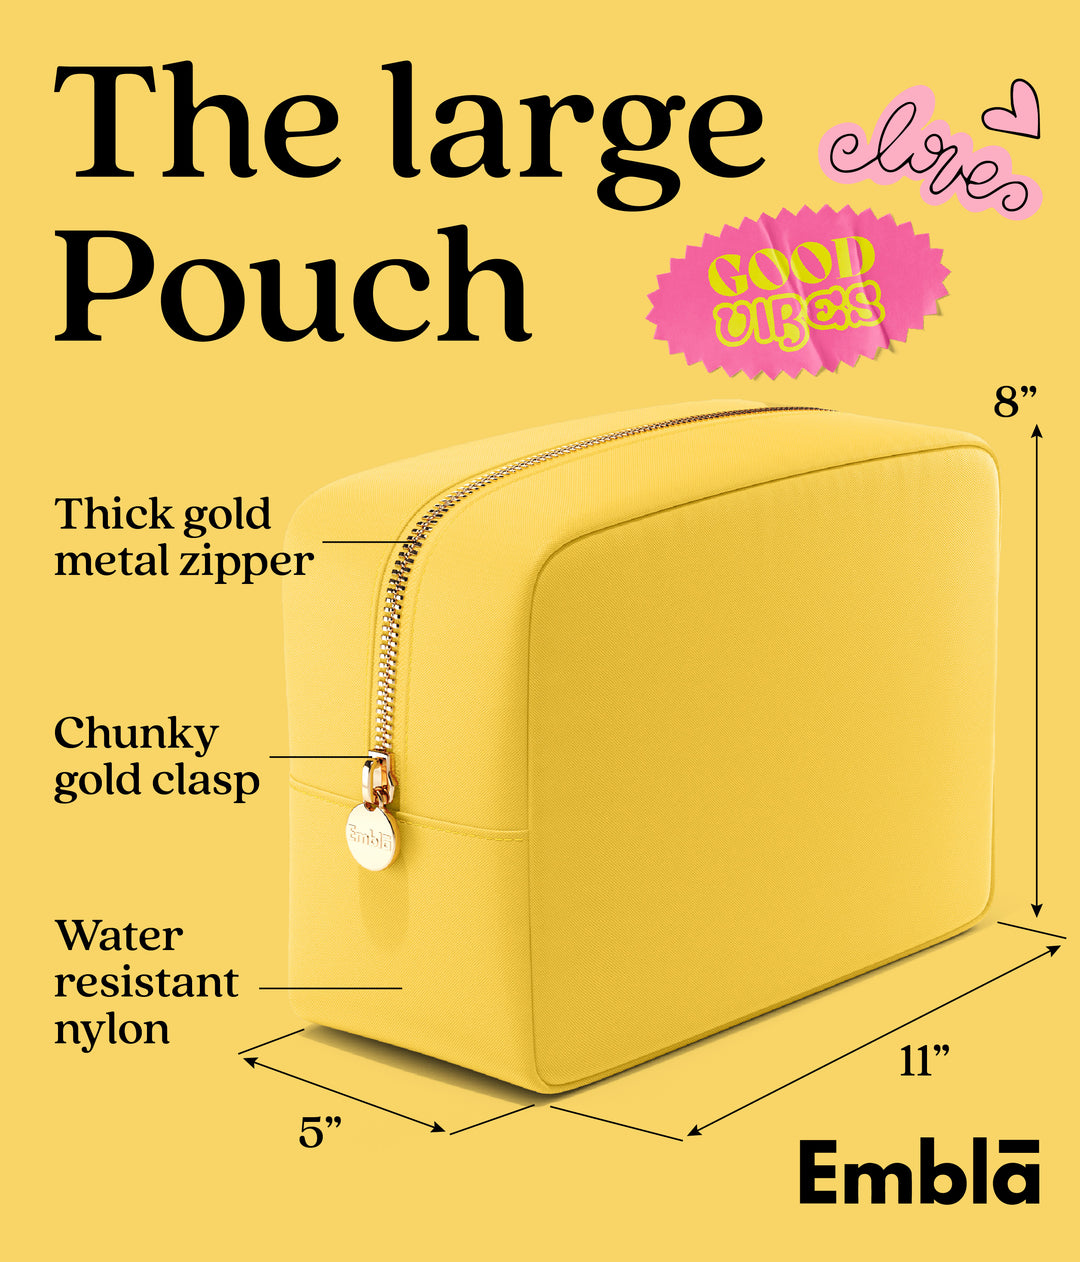 The Large Lemon Pouch